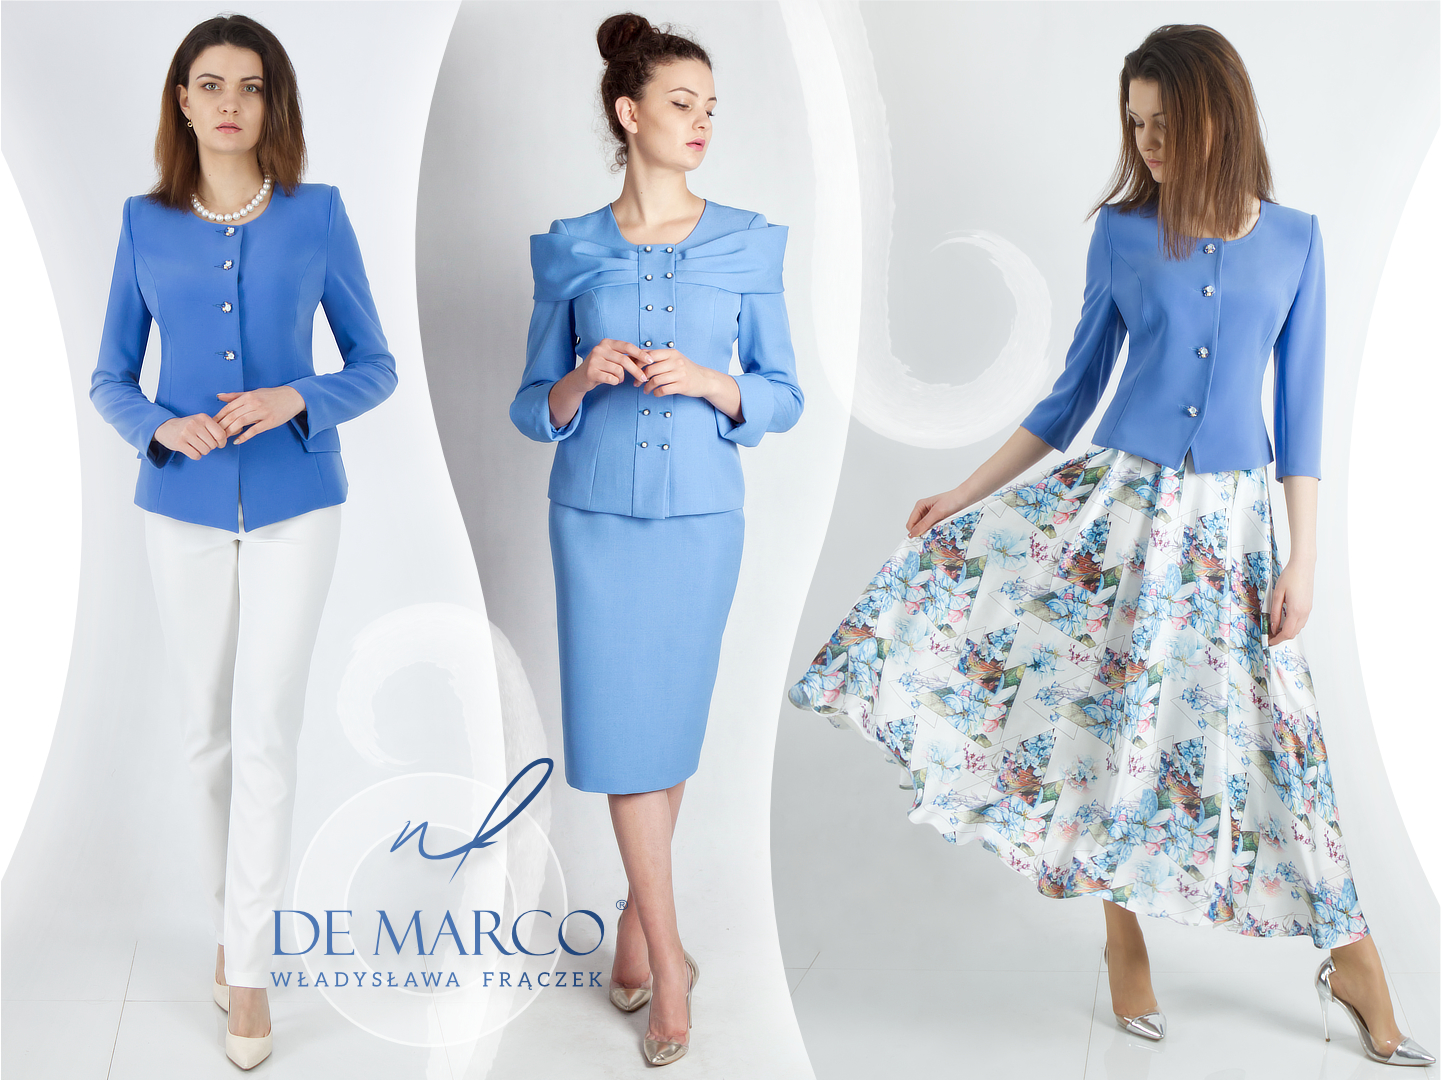 Eleganckie ubrania do pracy w biurze De Marco polska marka z wizytową odzieżą damską.